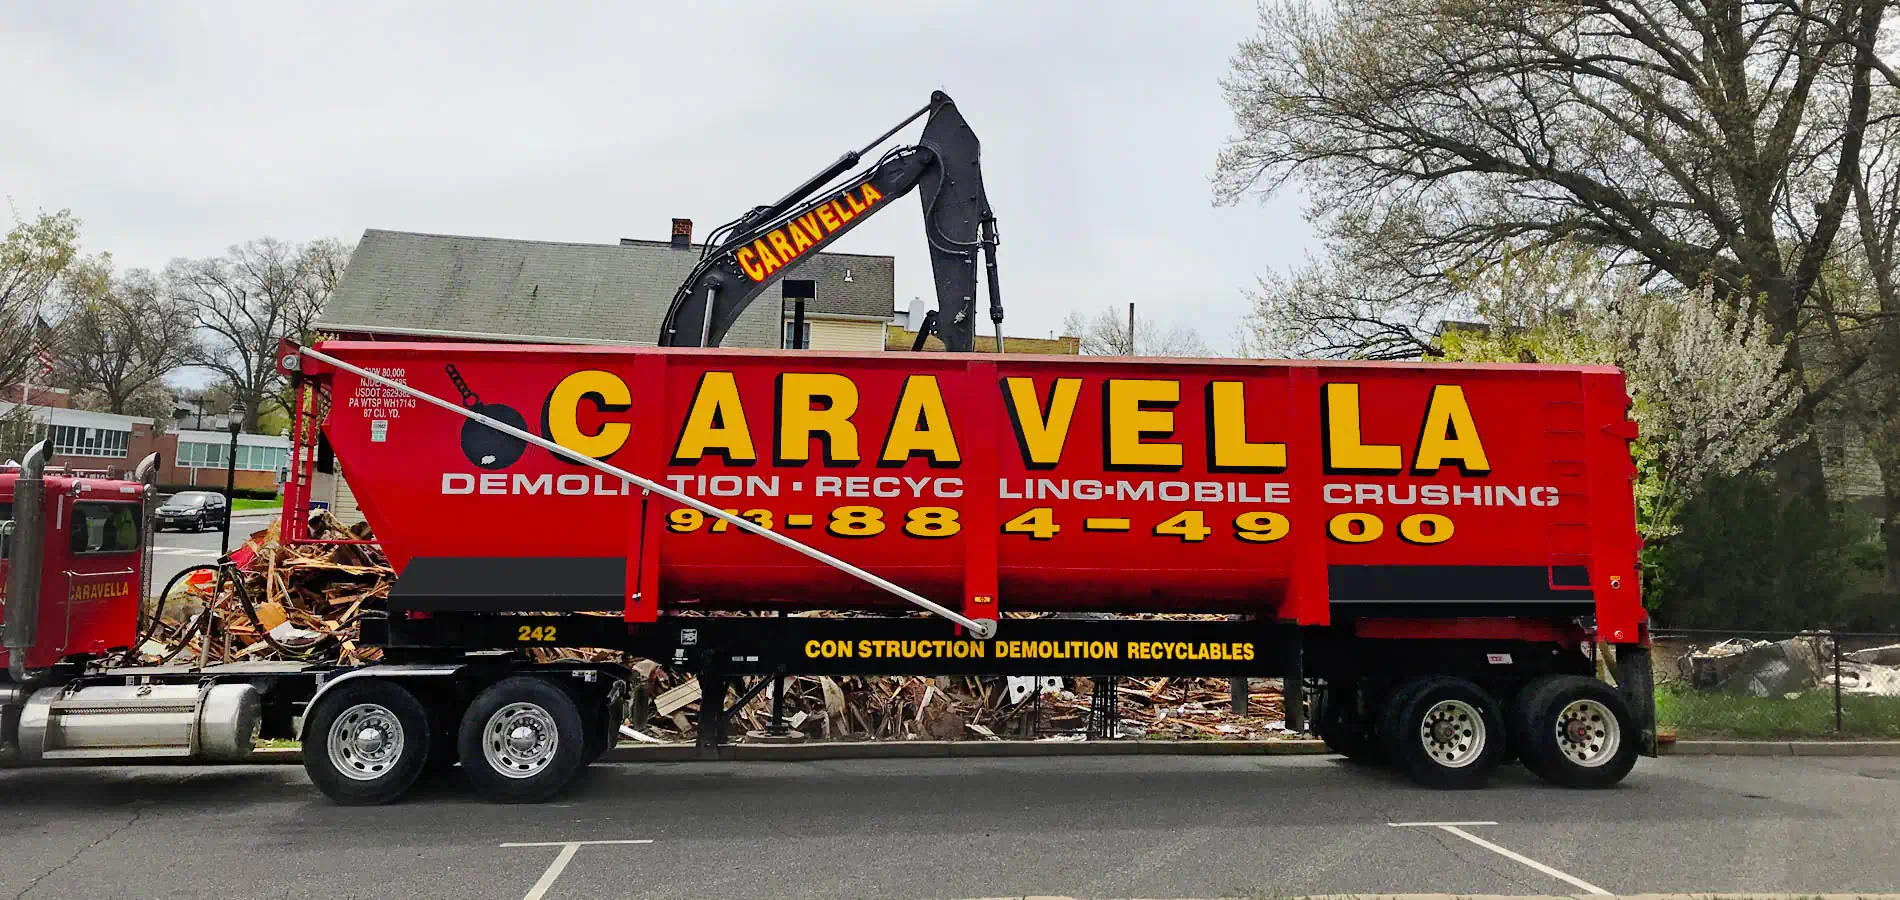 Demolition Services in Fairfield, NJ 07004 | Caravella Demolition